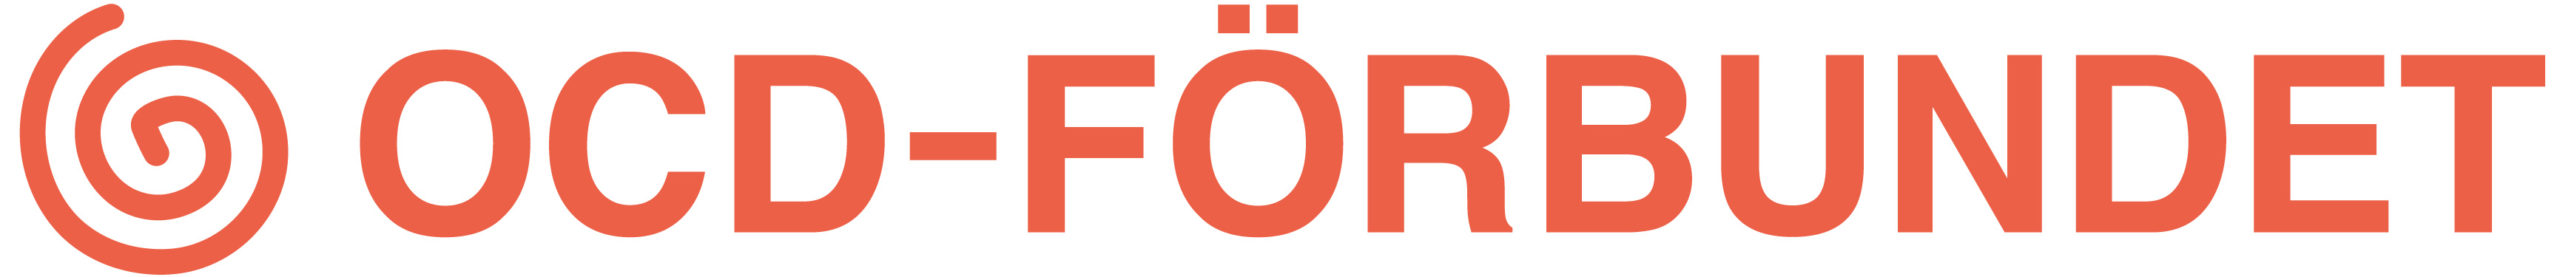 Logotyp OCD-förbundet